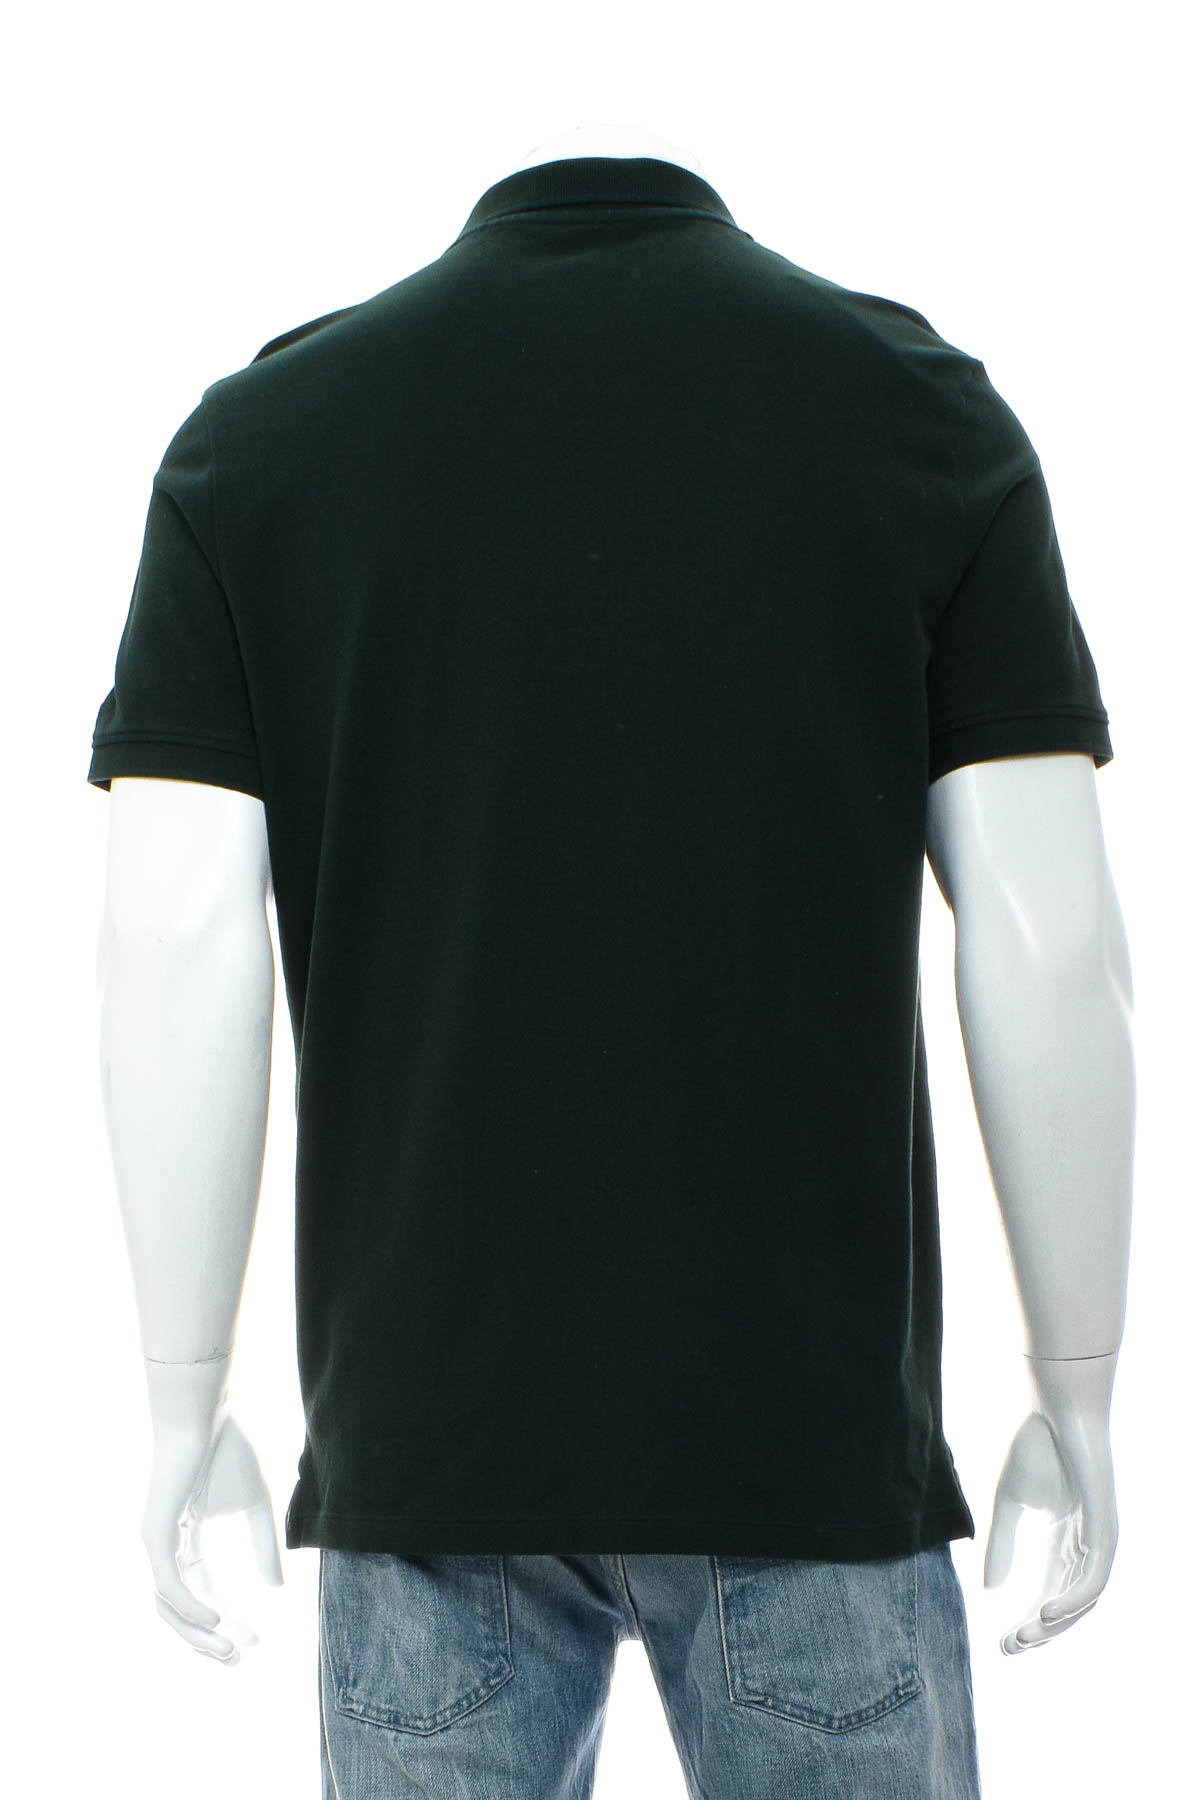 Αντρική μπλούζα - ESPRIT - 1